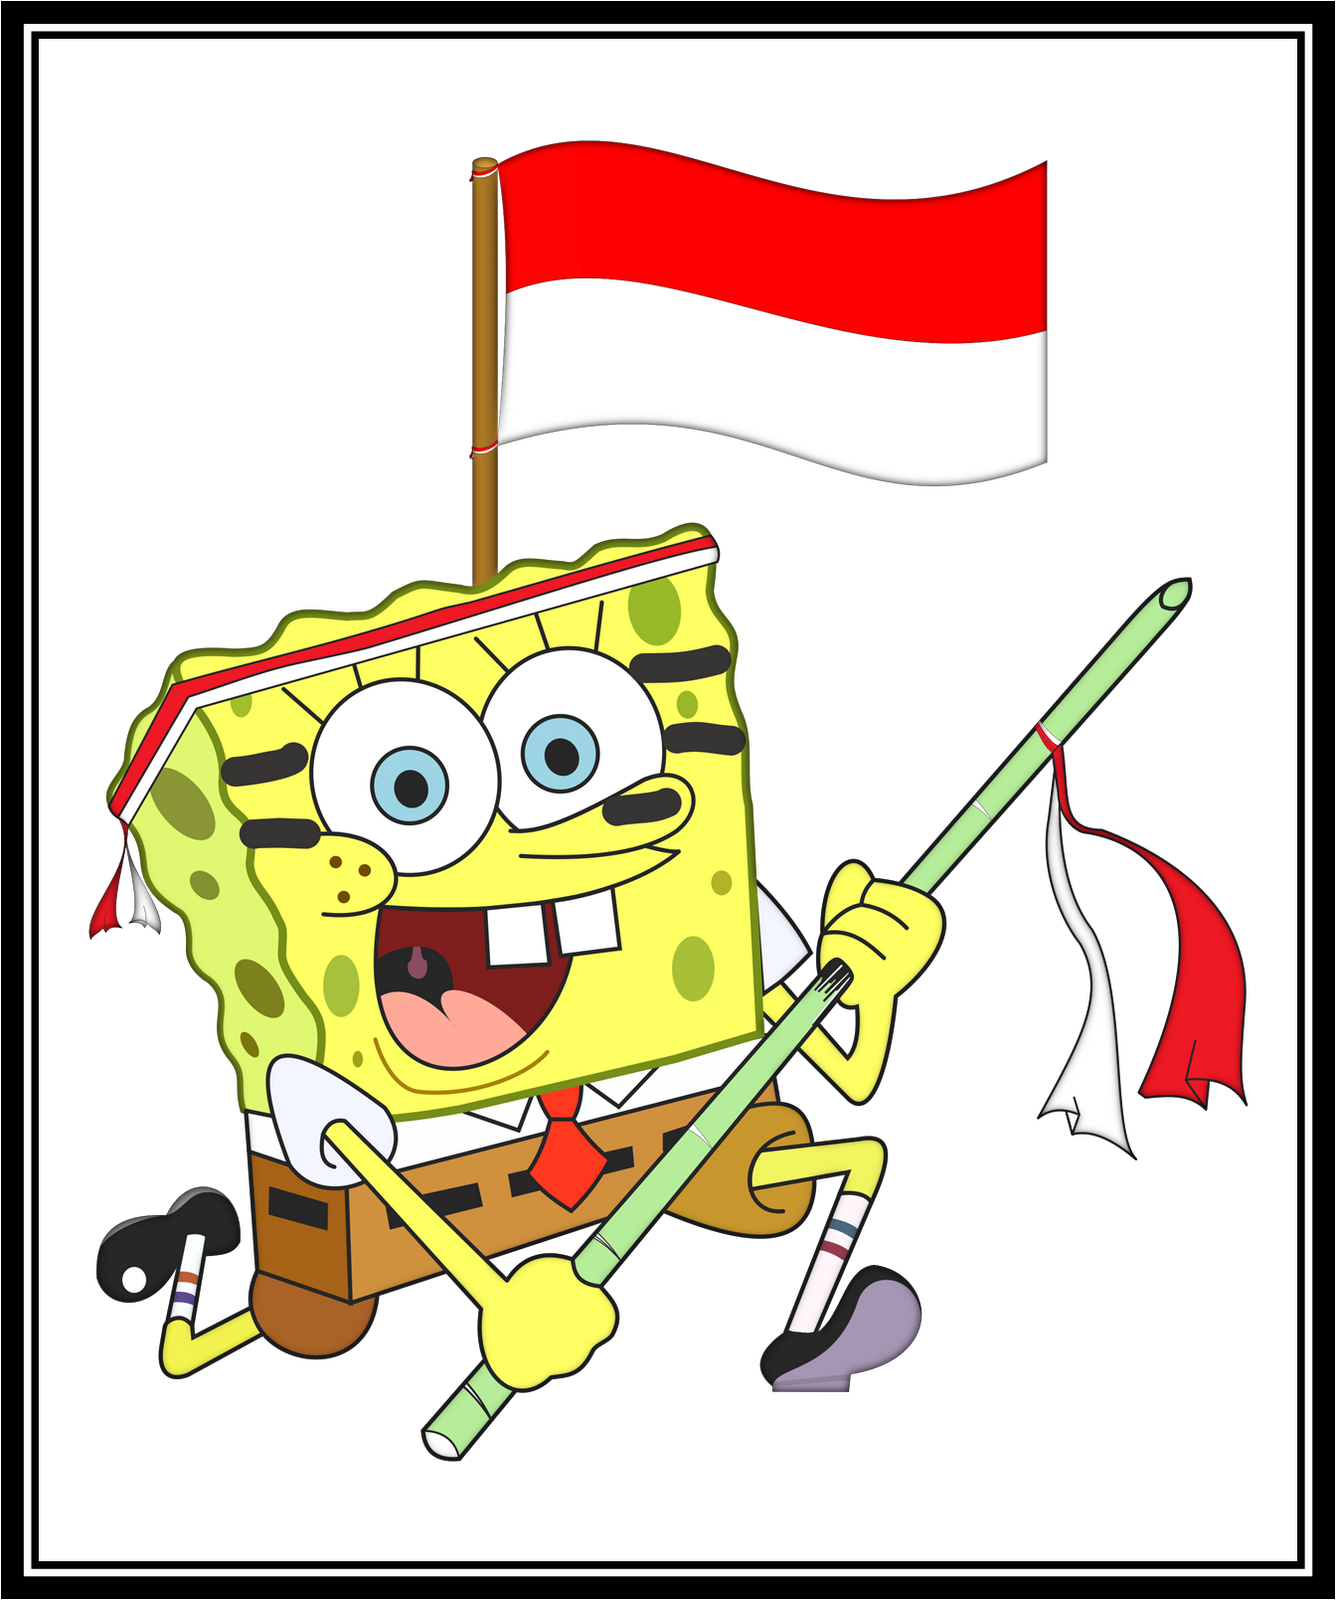  Gambar Rumah Spongebob spongebob squarepants characters 